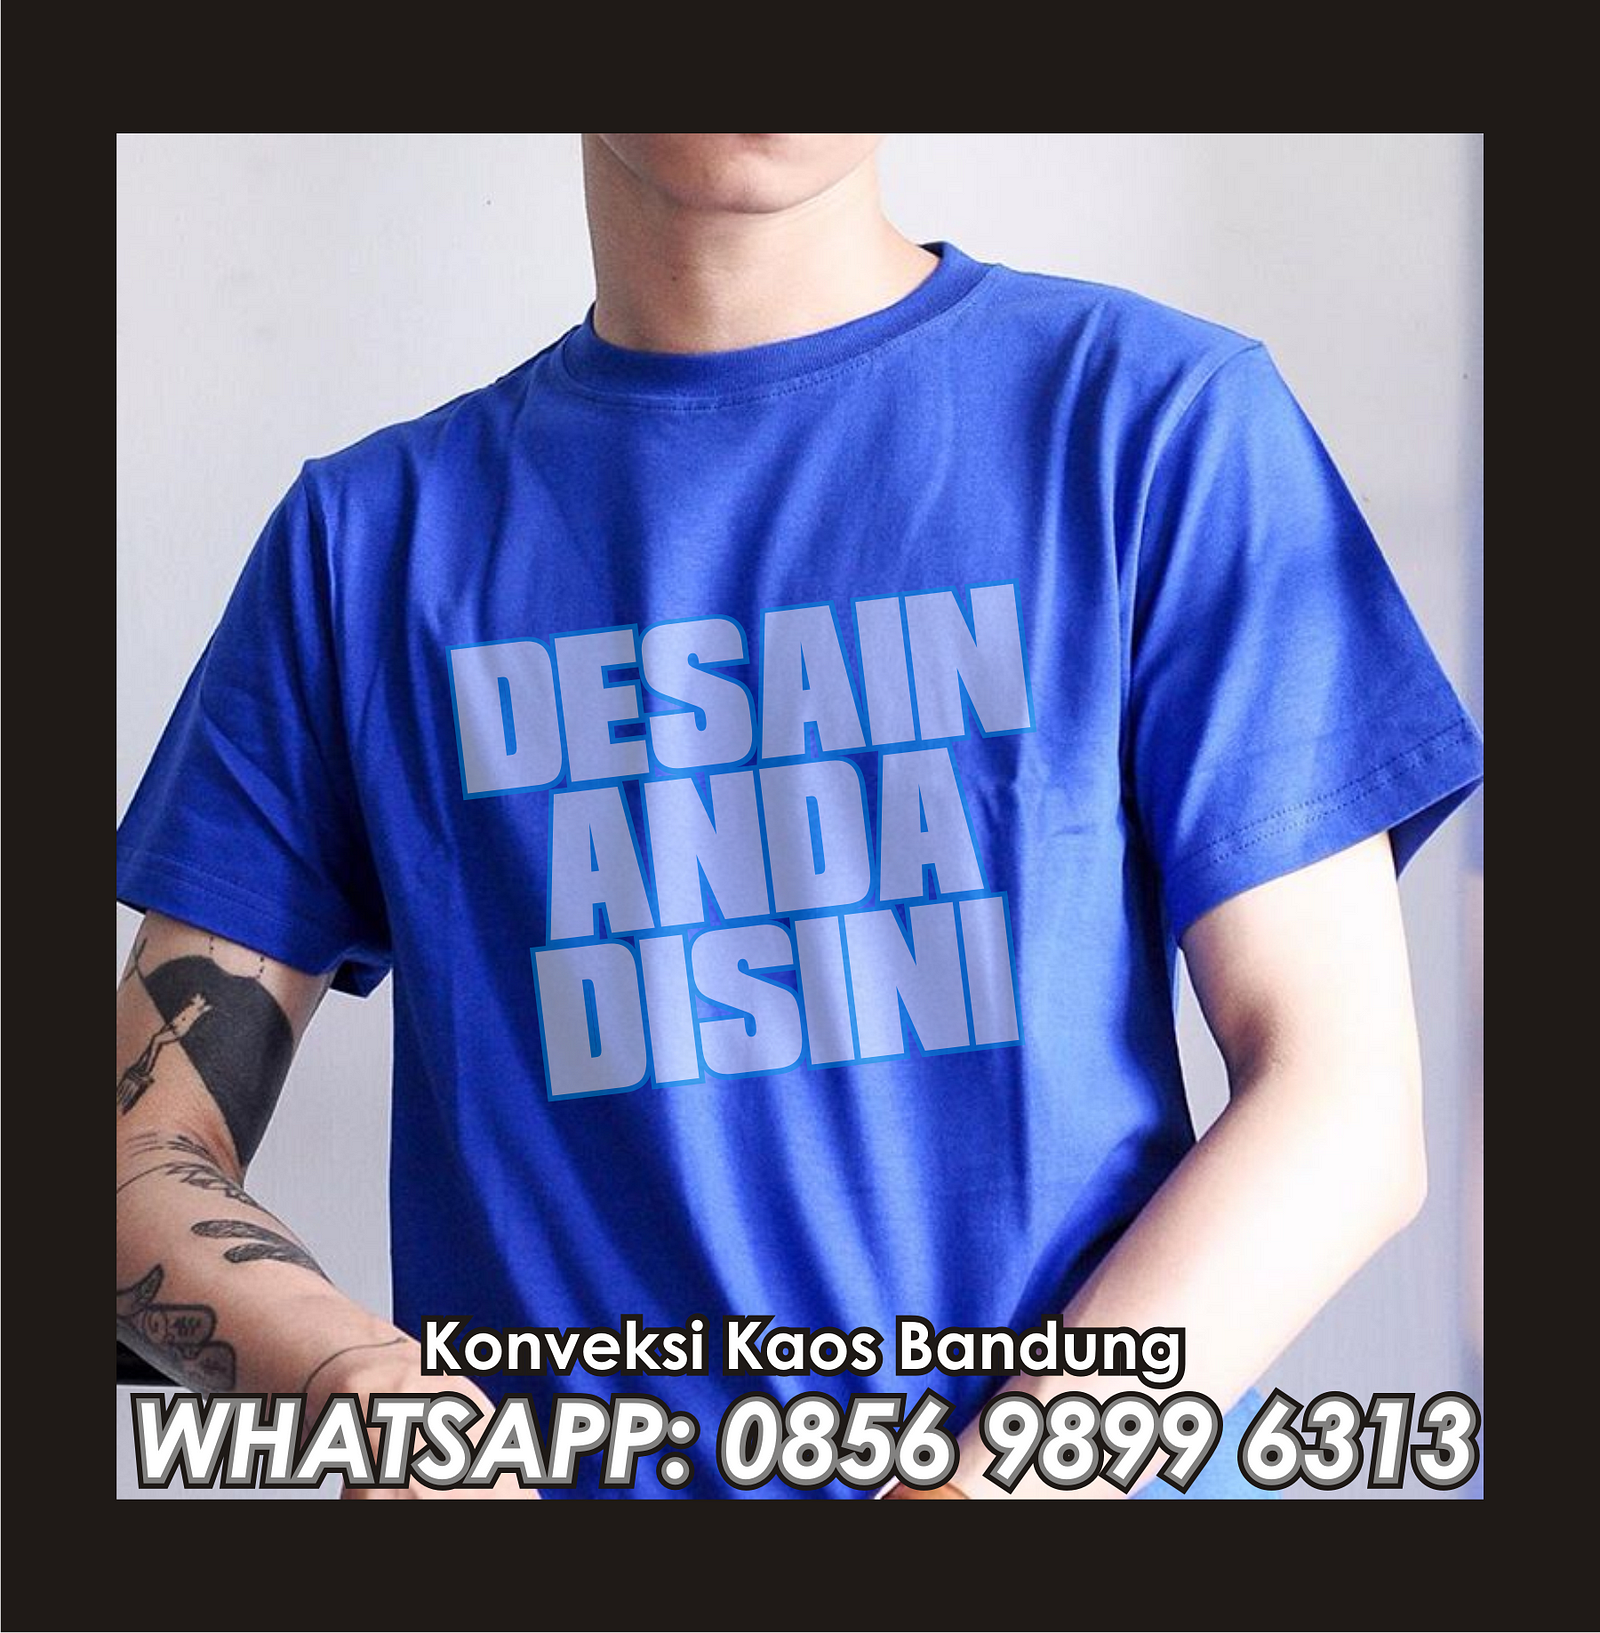 BIKIN KAOS DESAIN SENDIRI Konveksi Bandung 0857 9899 6313